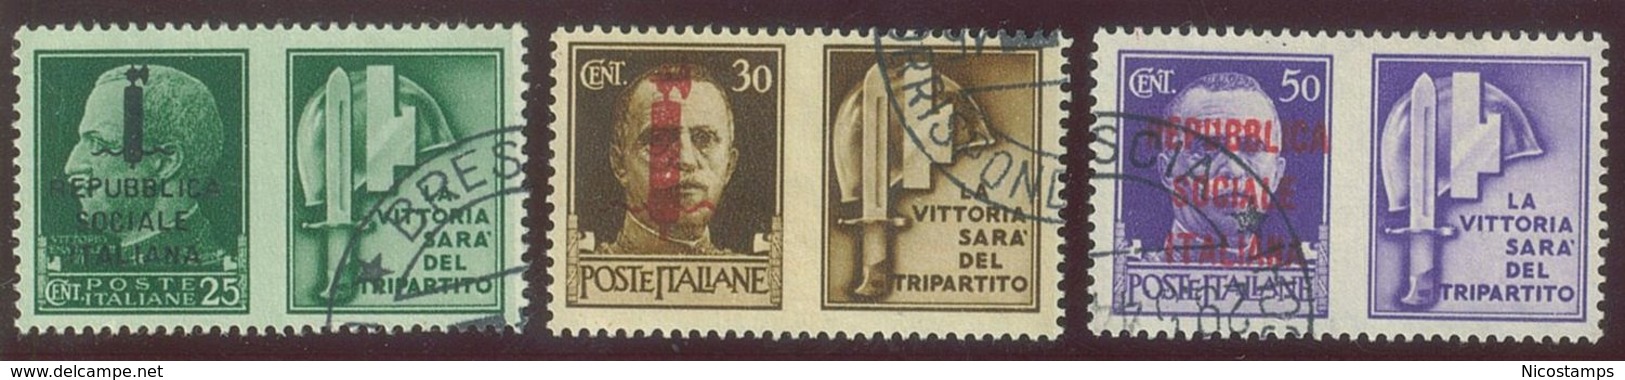 ITALIA REPUBBLICA SOCIALE ITALIANA (R.S.I.) SASS. P.G. 25 - 36 USATI - Kriegspropaganda